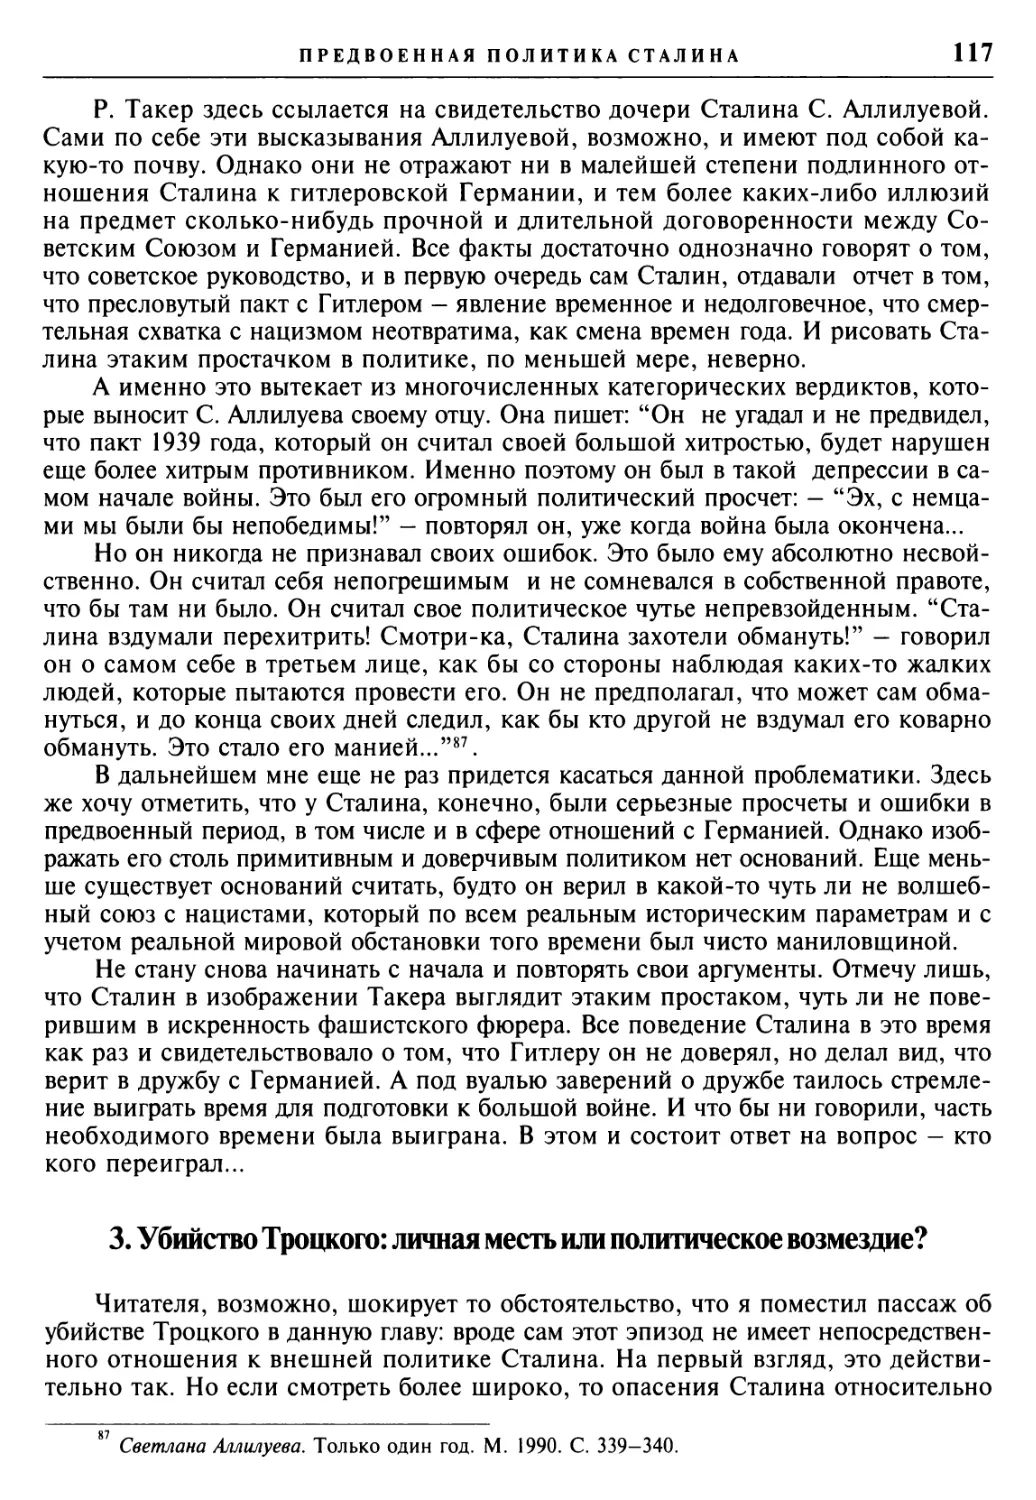 3. Убийство Троцкого: личная месть или политическое возмездие?